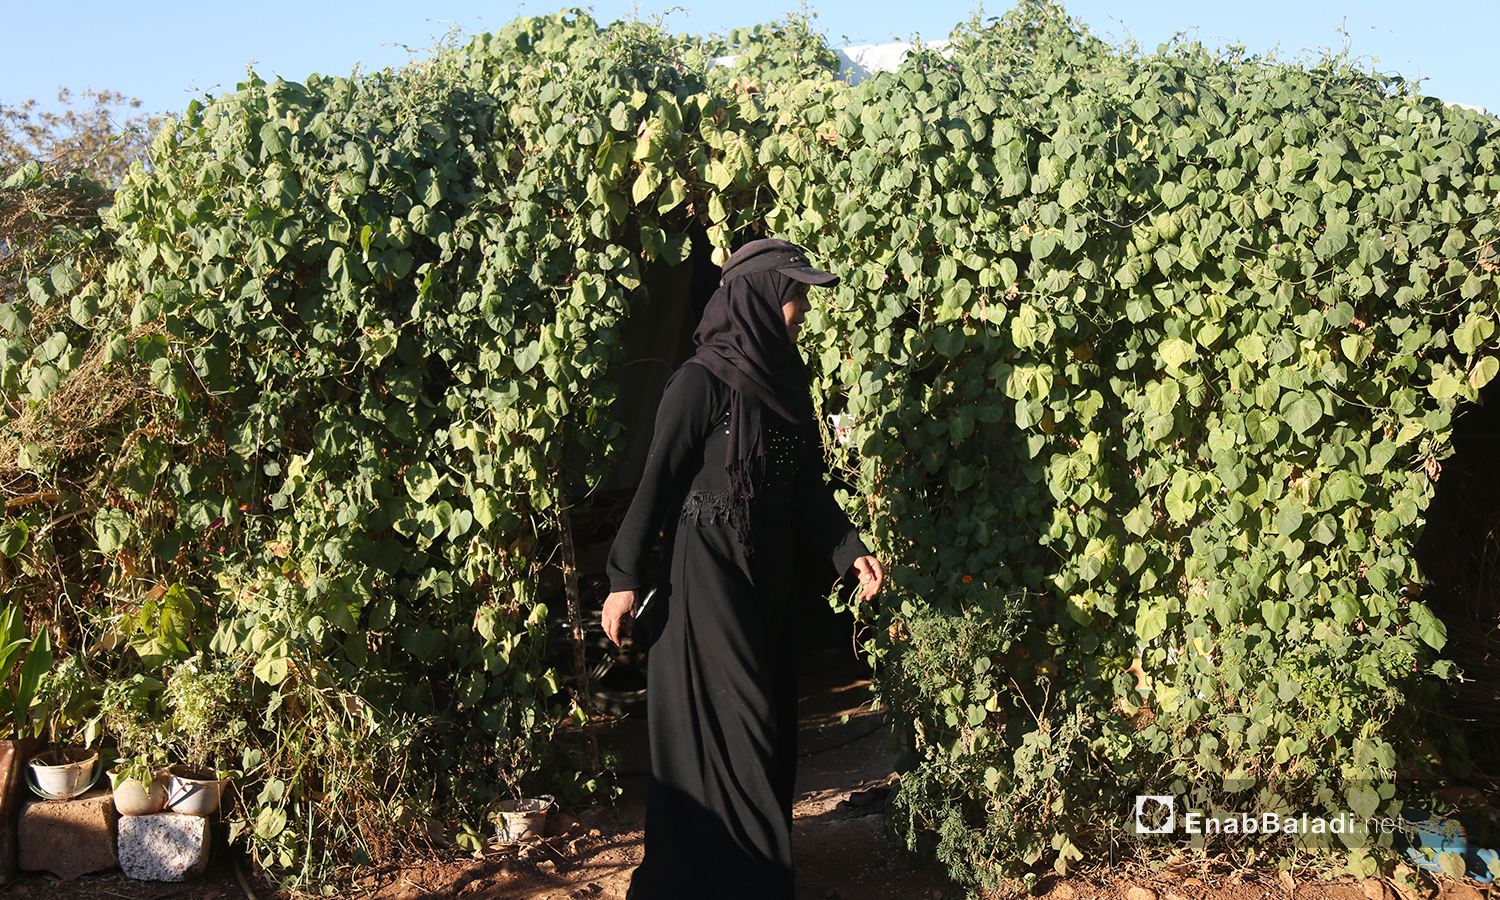 تخرج حورية موسى من خيمتها المغطاة بالنباتات في مخيم "المطار" بريف إدلب الشمالي لتبدأ روتينها للعناية بمسكنها - تشرين الأول 2020 (عنب بلدي/ يوسف غريبي)